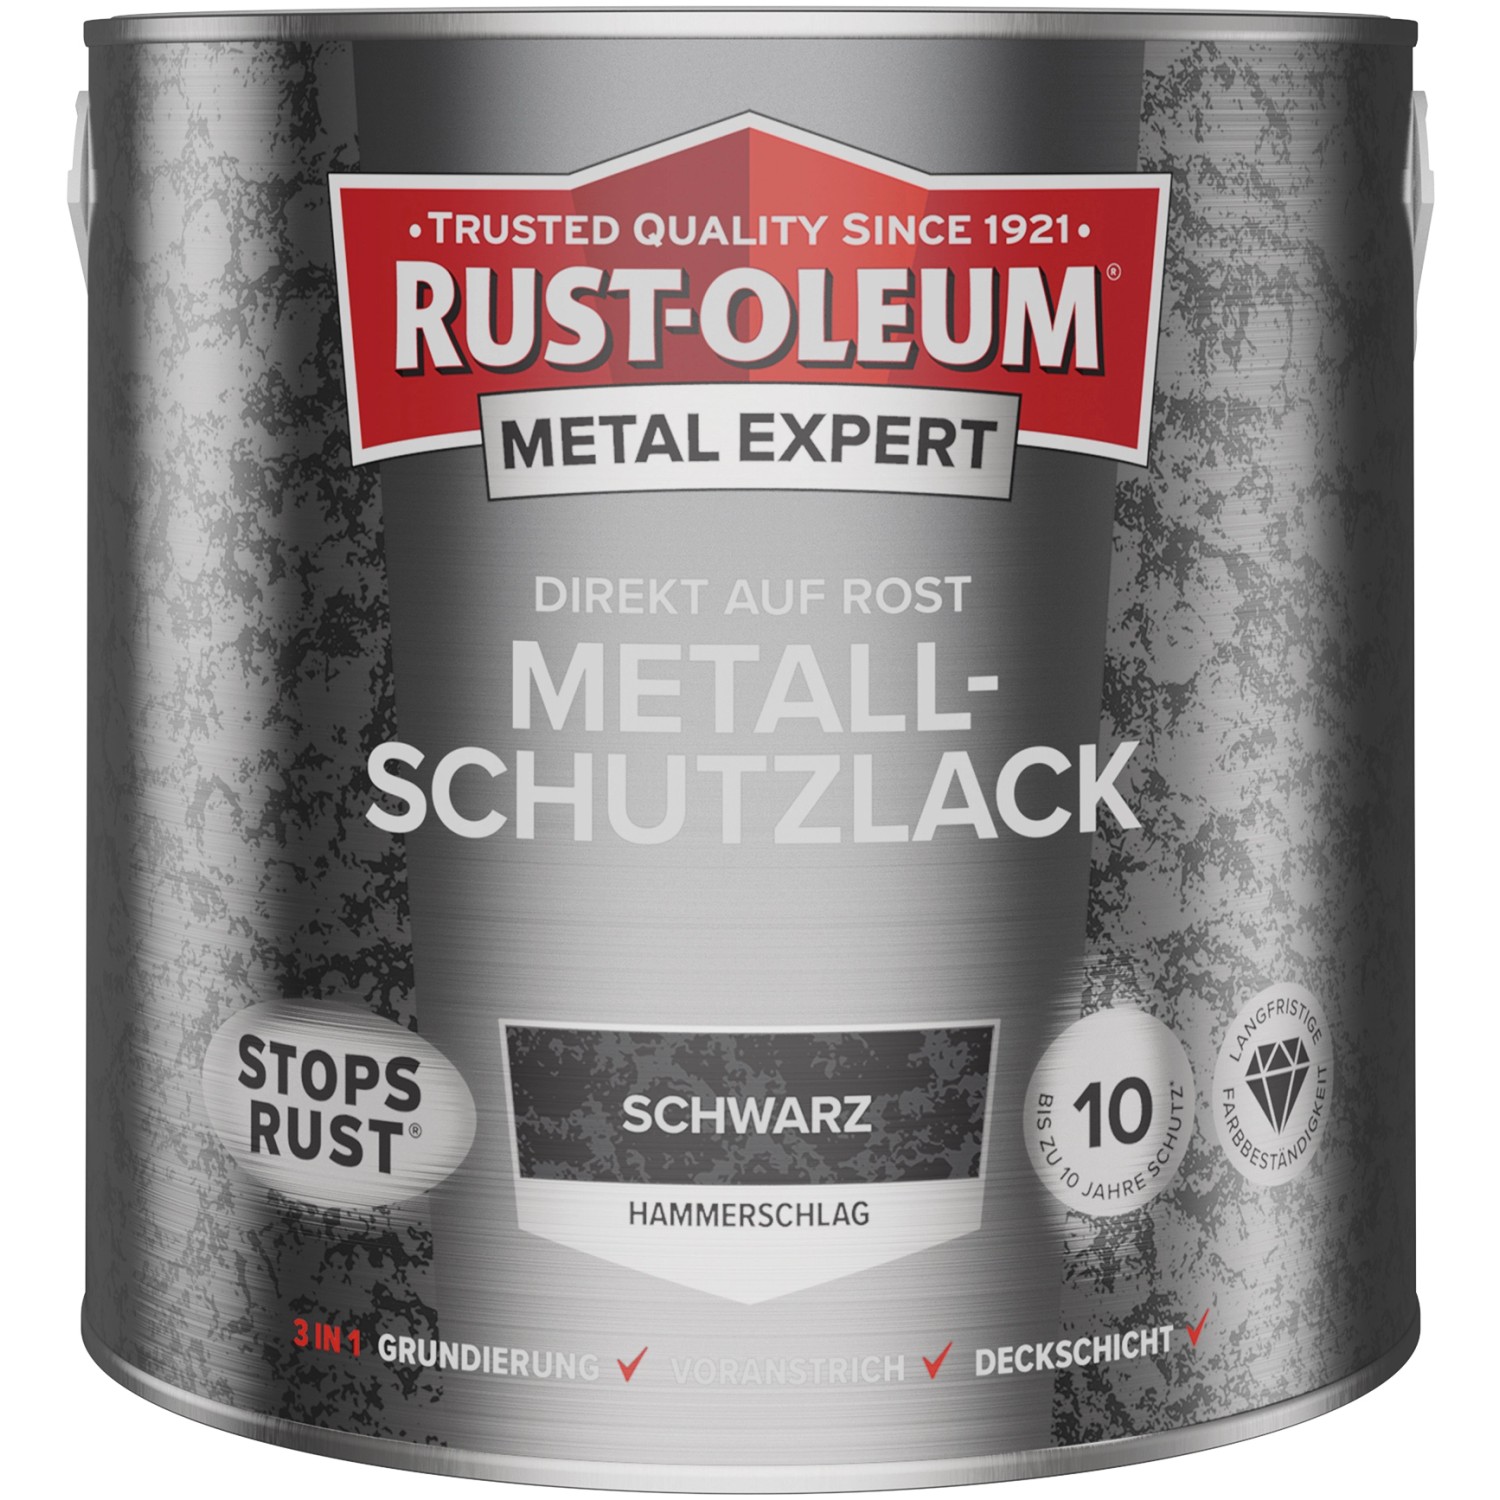 Rust-Oleum Metal Expert Hammerschlag Schwarz 2,5 l von Rust-Oleum